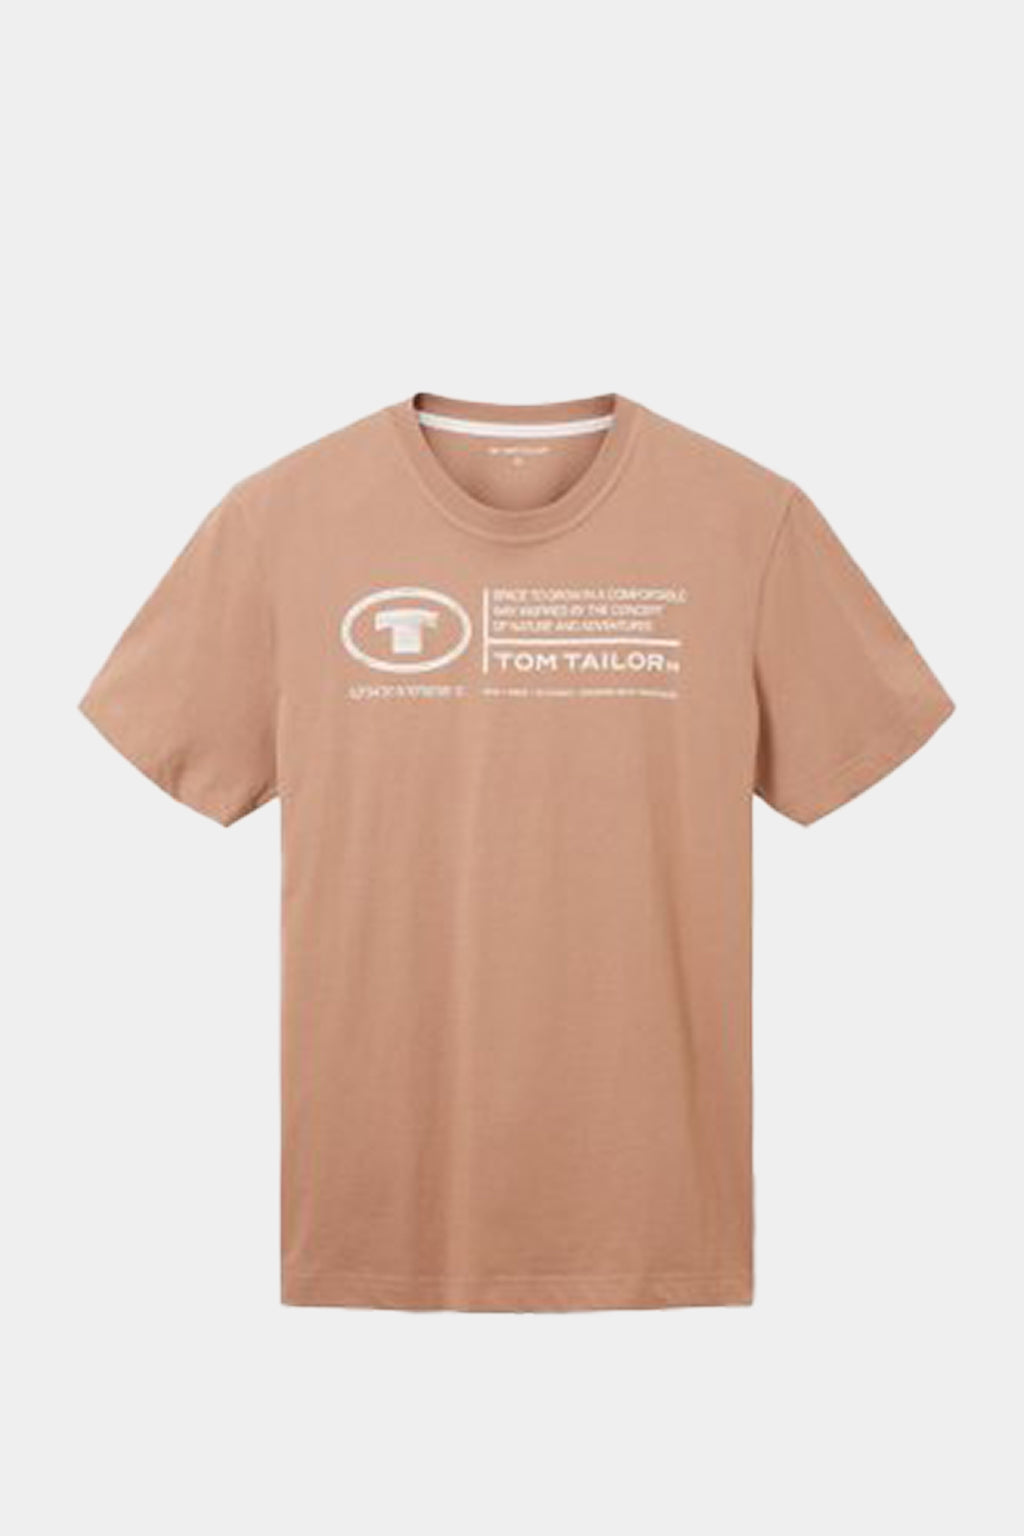 Tom Tailor -  Men's  T-shirt